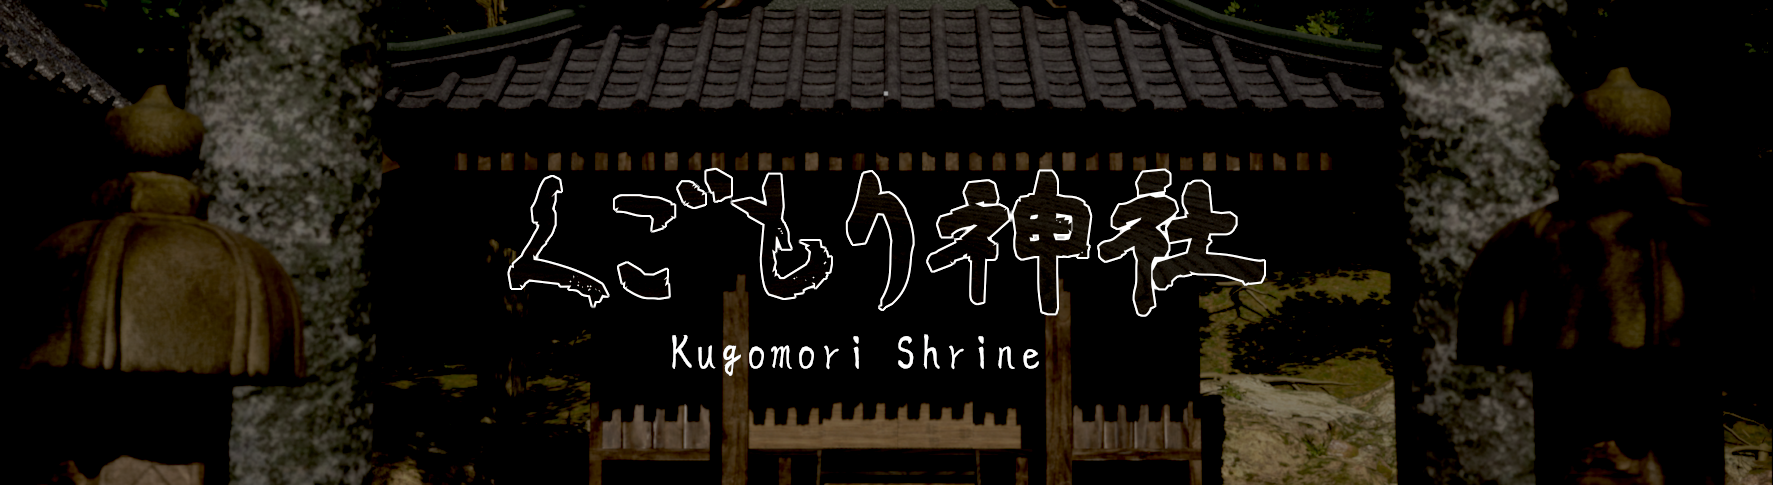 くごもり神社 - kugomori shrine -